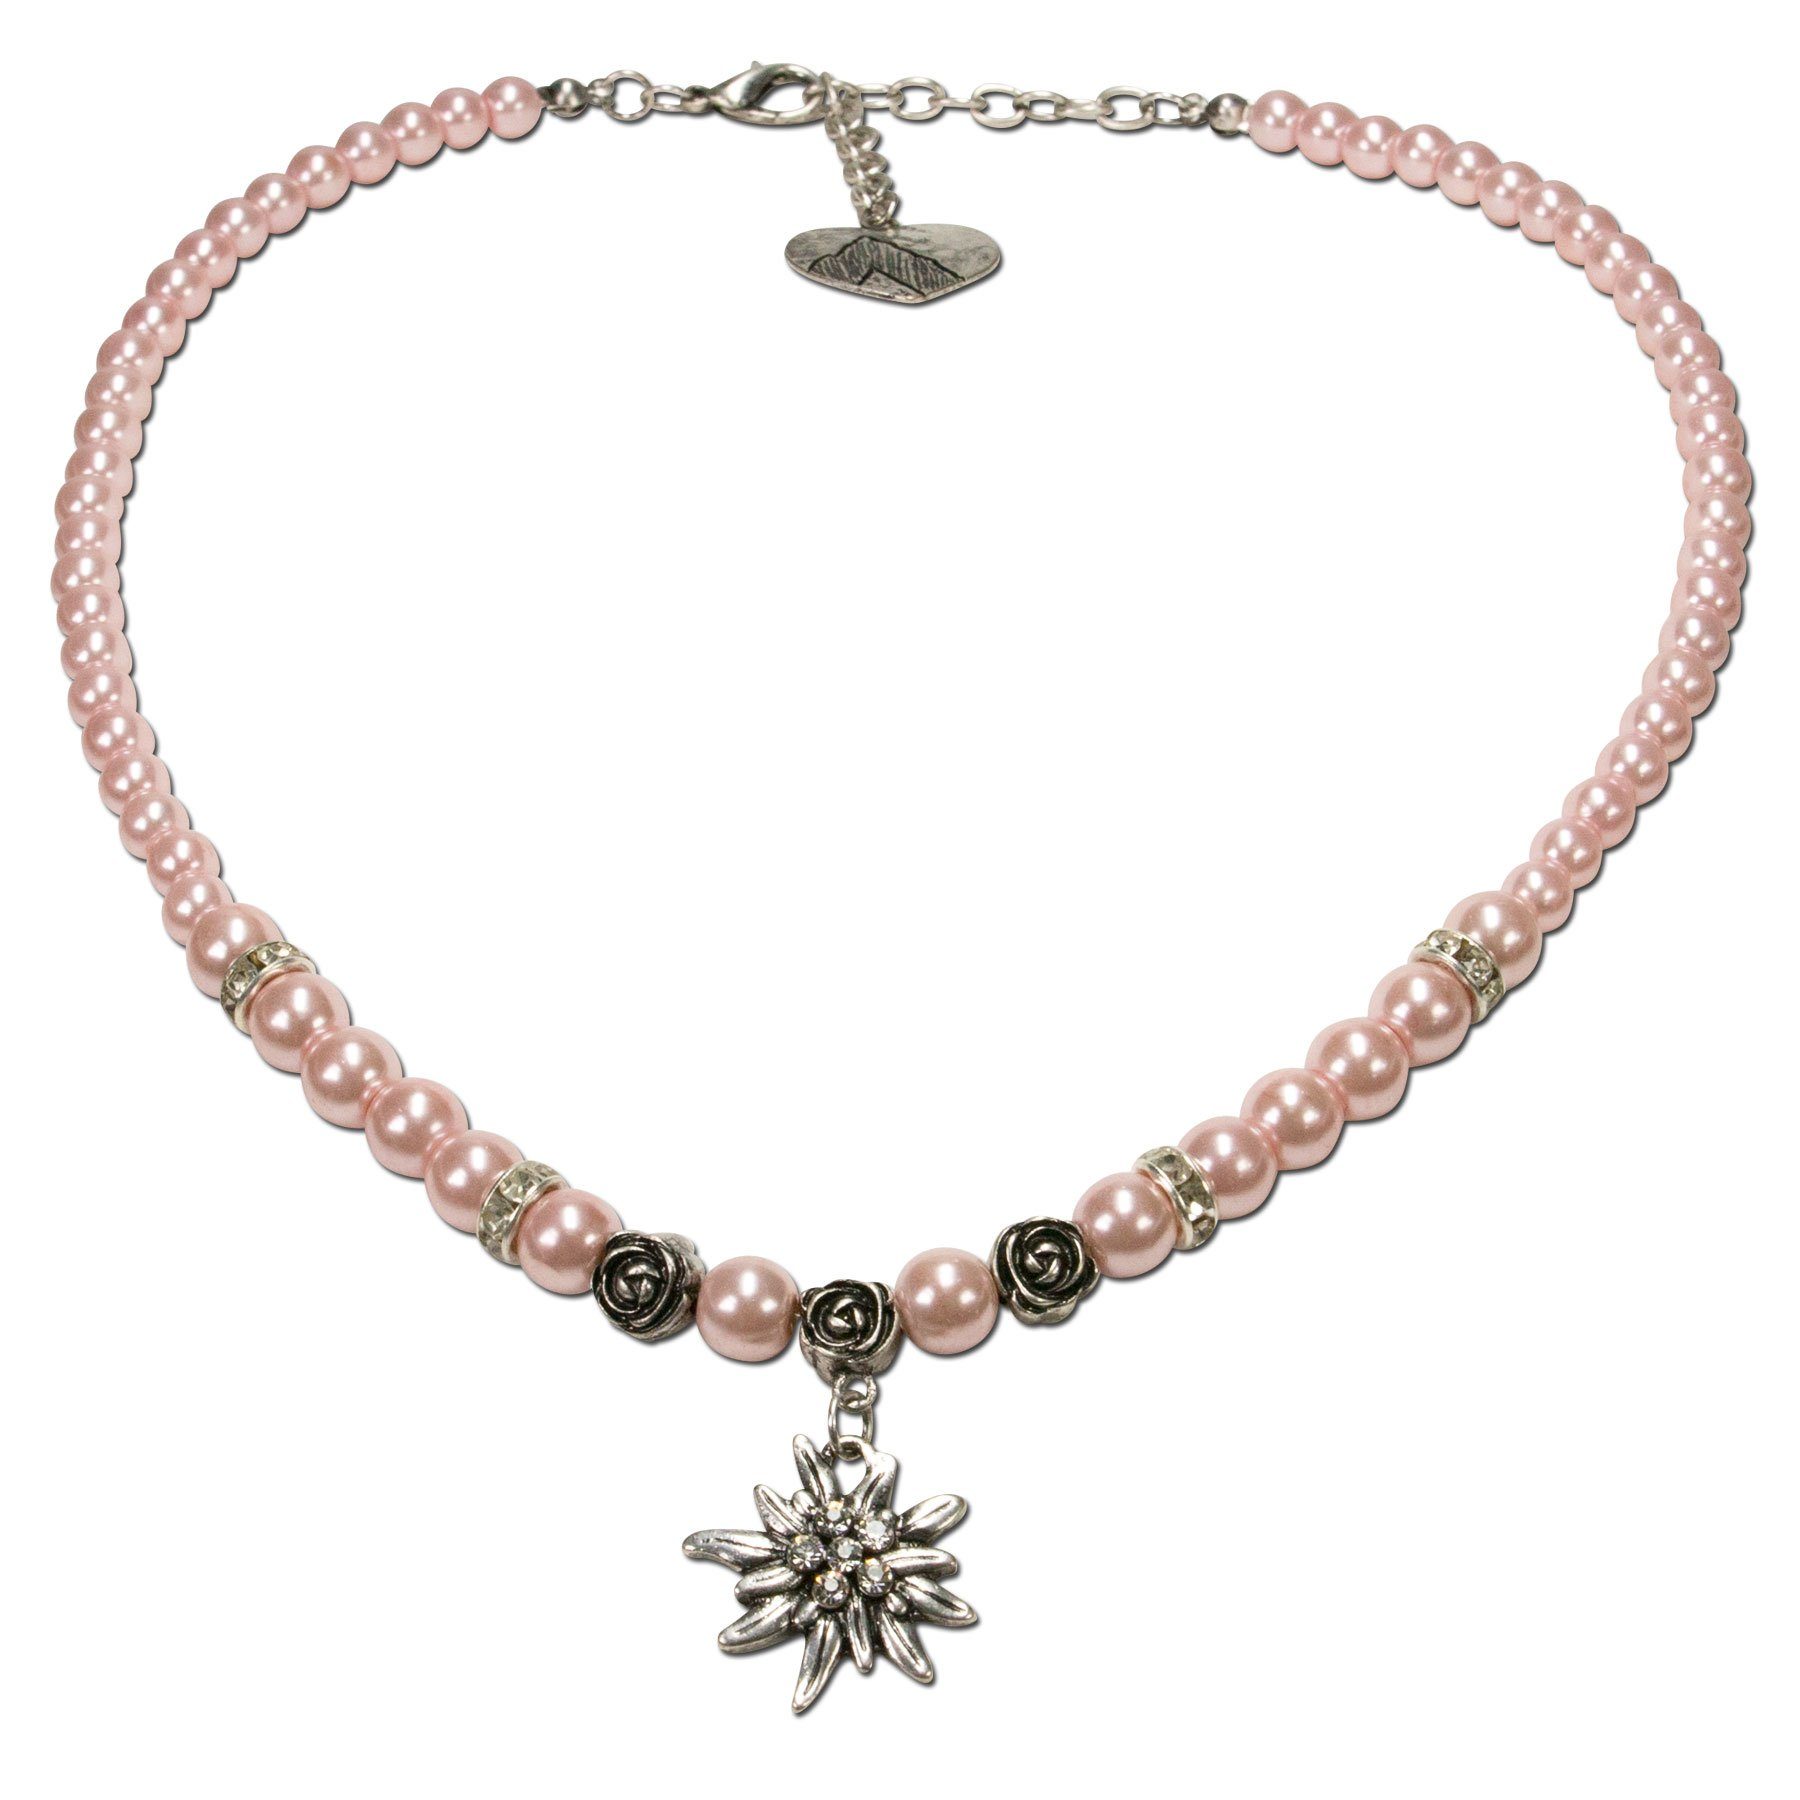 Alpenflüstern Collier Perlen-Trachtenkette Fiona mit Strass-Edelweiß klein (rosé-rosa), - Damen-Trachtenschmuck Dirndlkette